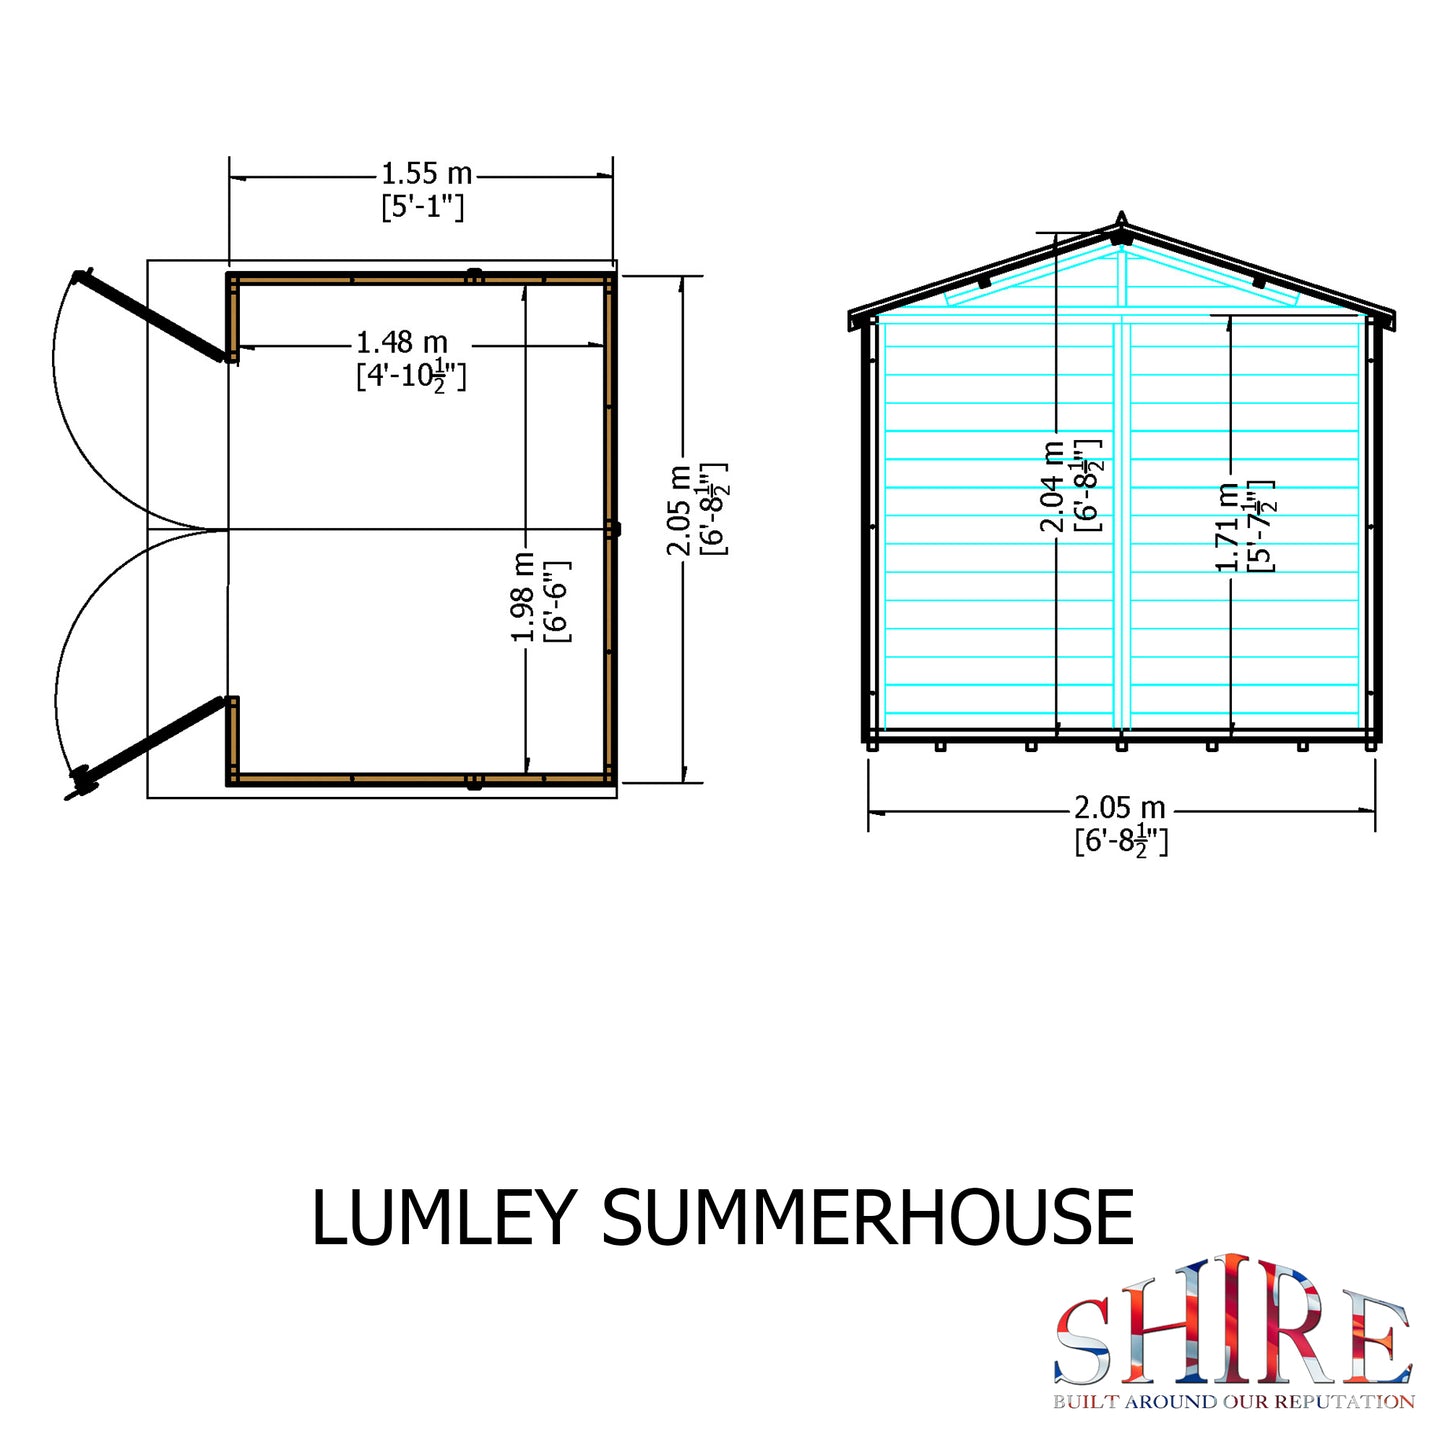 Shire 7 X 5 Lumley  Summerhouse - Premium Garden